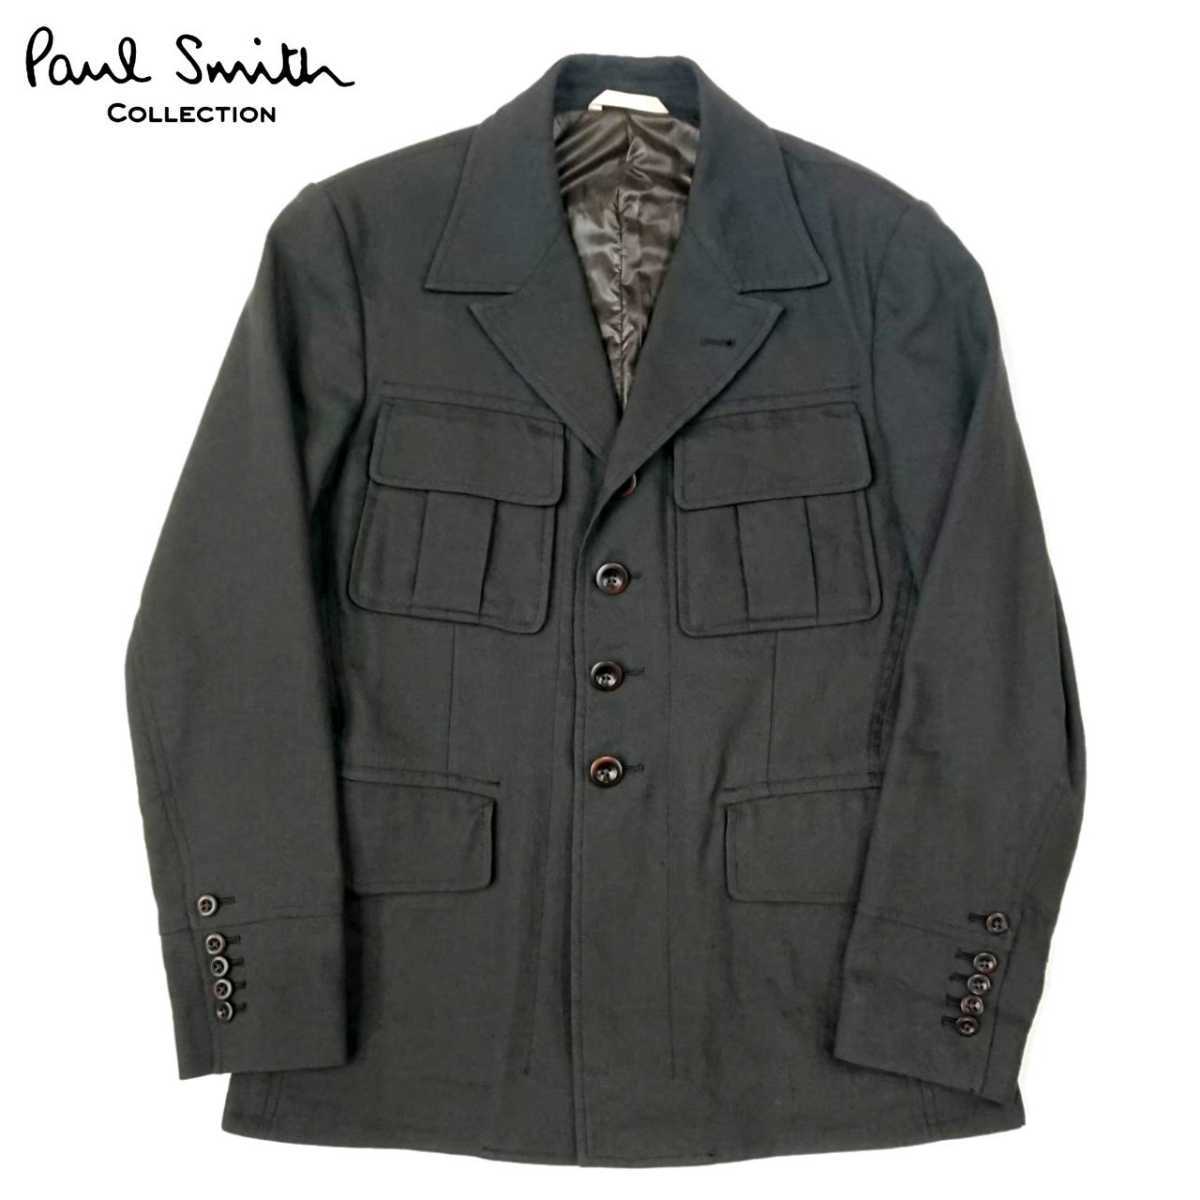  супер шедевр Paul Smith COLLECTION Paul Smith коллекция сделано в Японии высший класс linen шерсть милитари задний карман жакет M превосходный товар LONDON